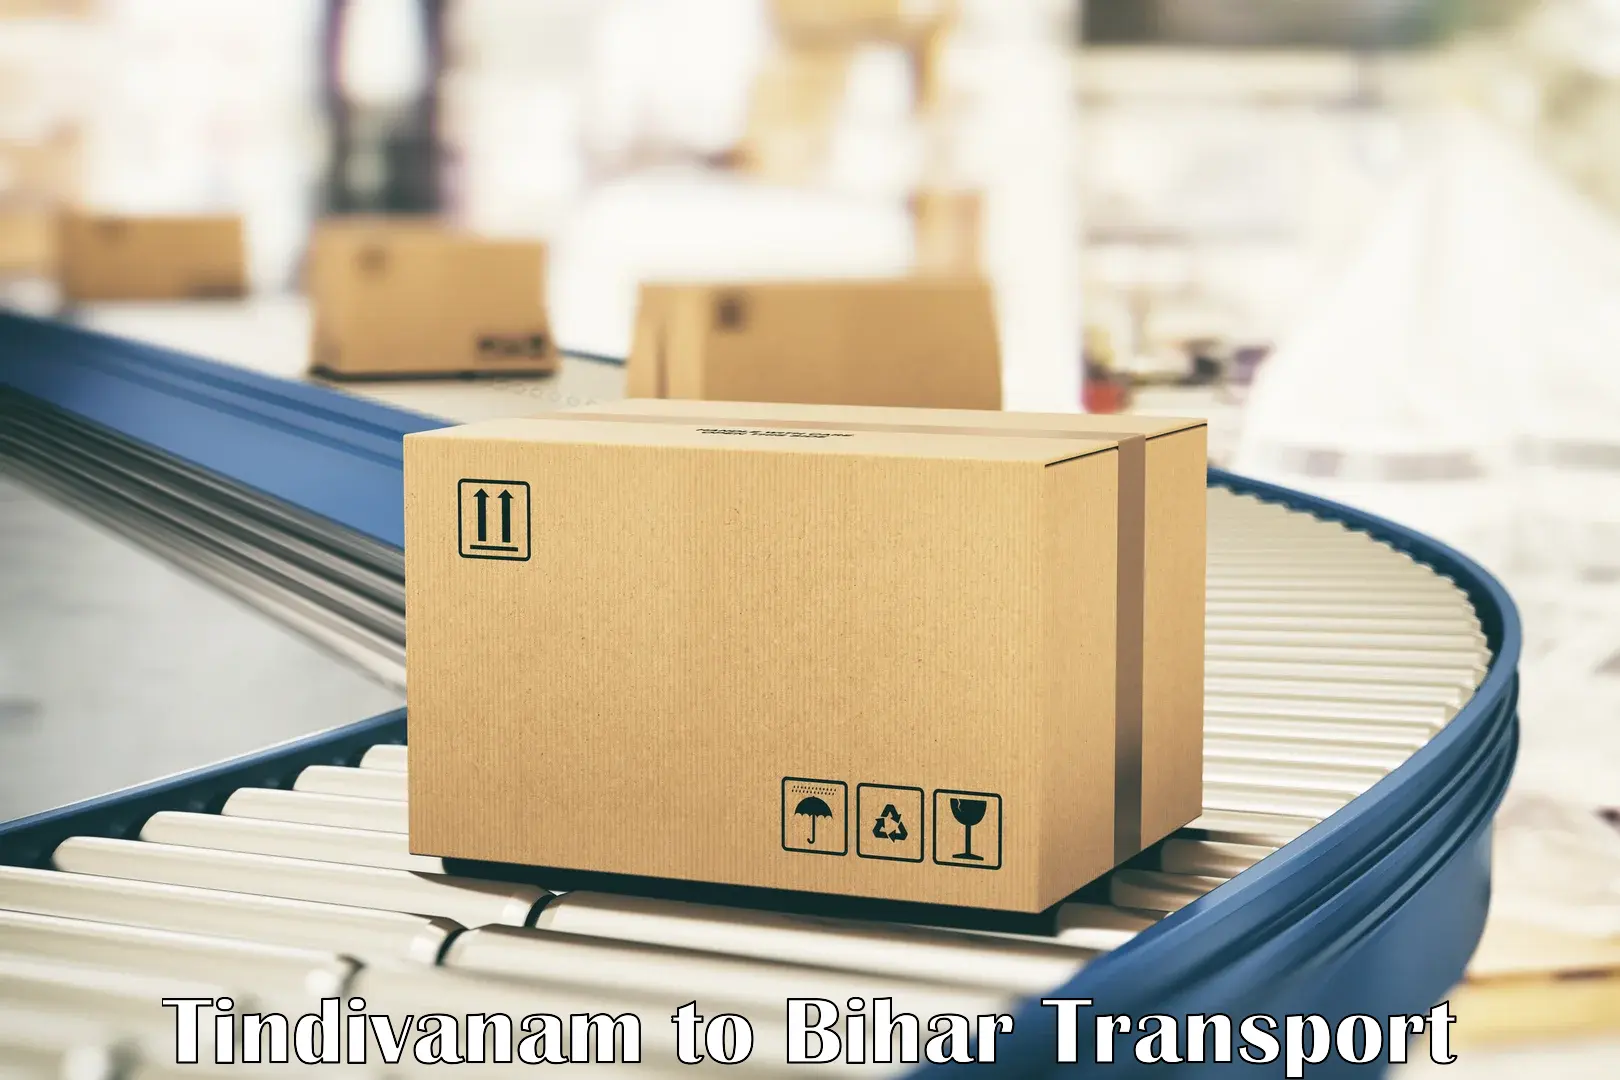 Container transportation services Tindivanam to Minapur